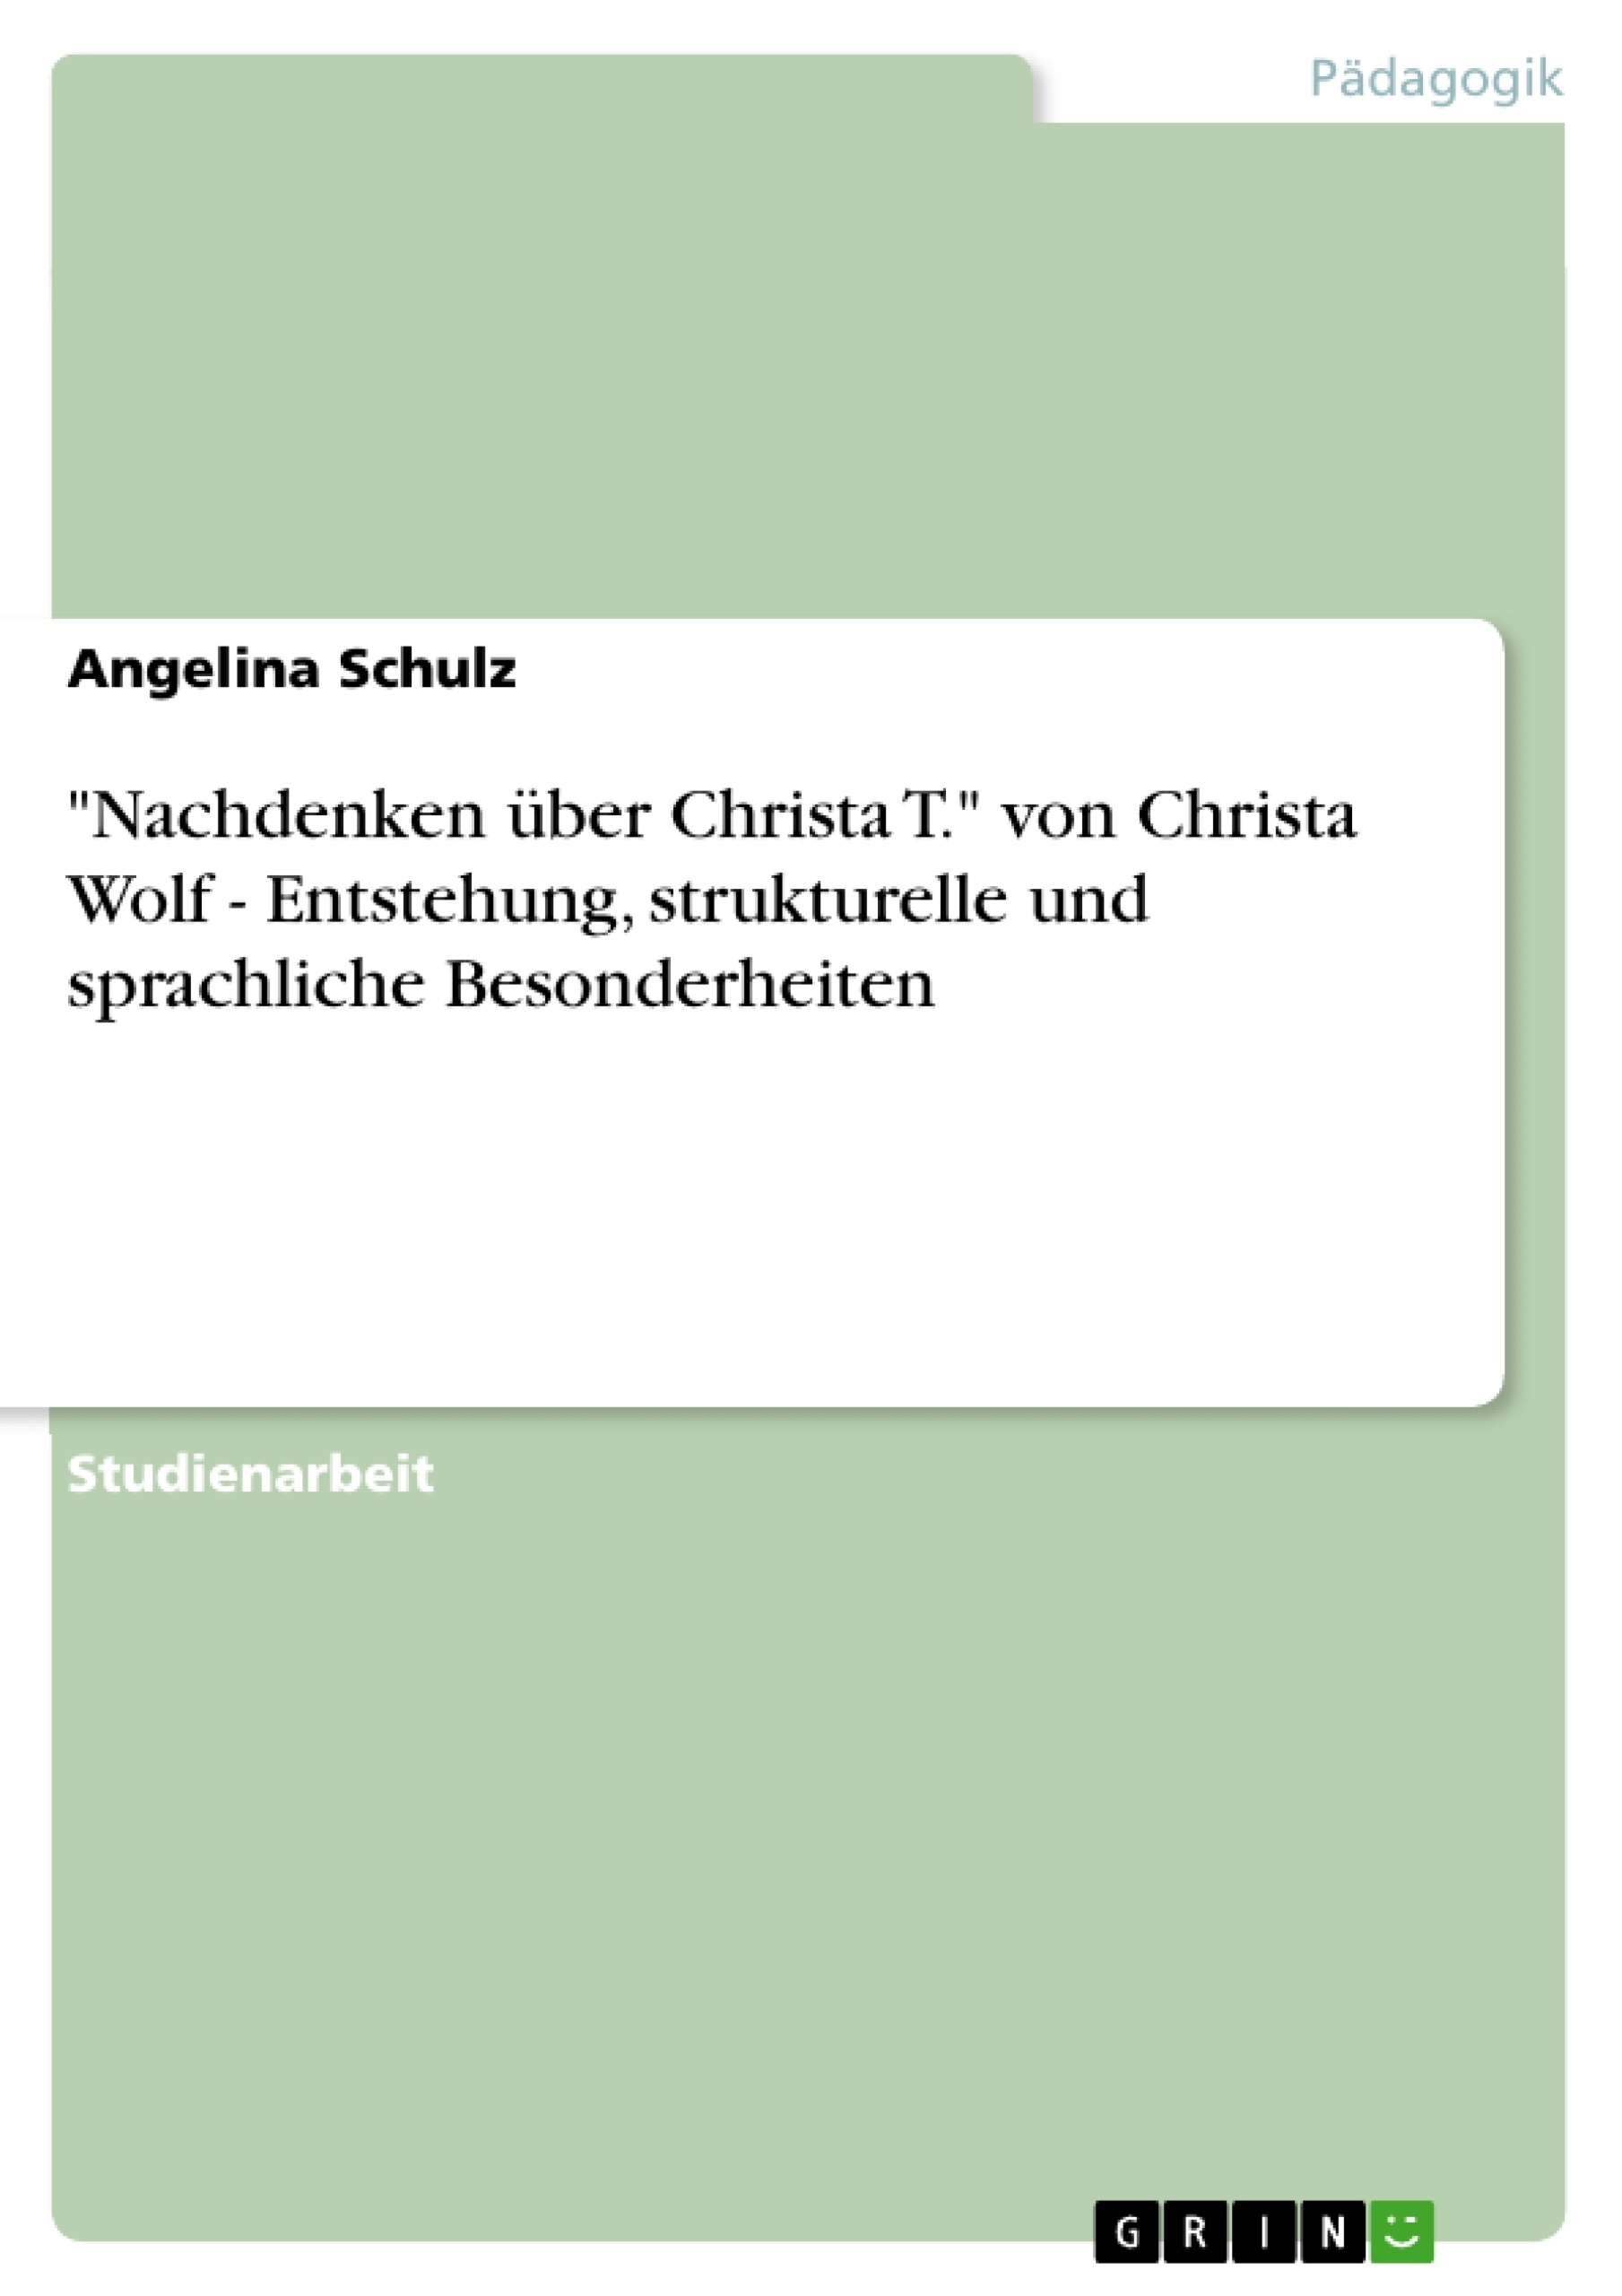 Title: "Nachdenken über Christa T." von Christa Wolf - Entstehung, strukturelle und sprachliche Besonderheiten